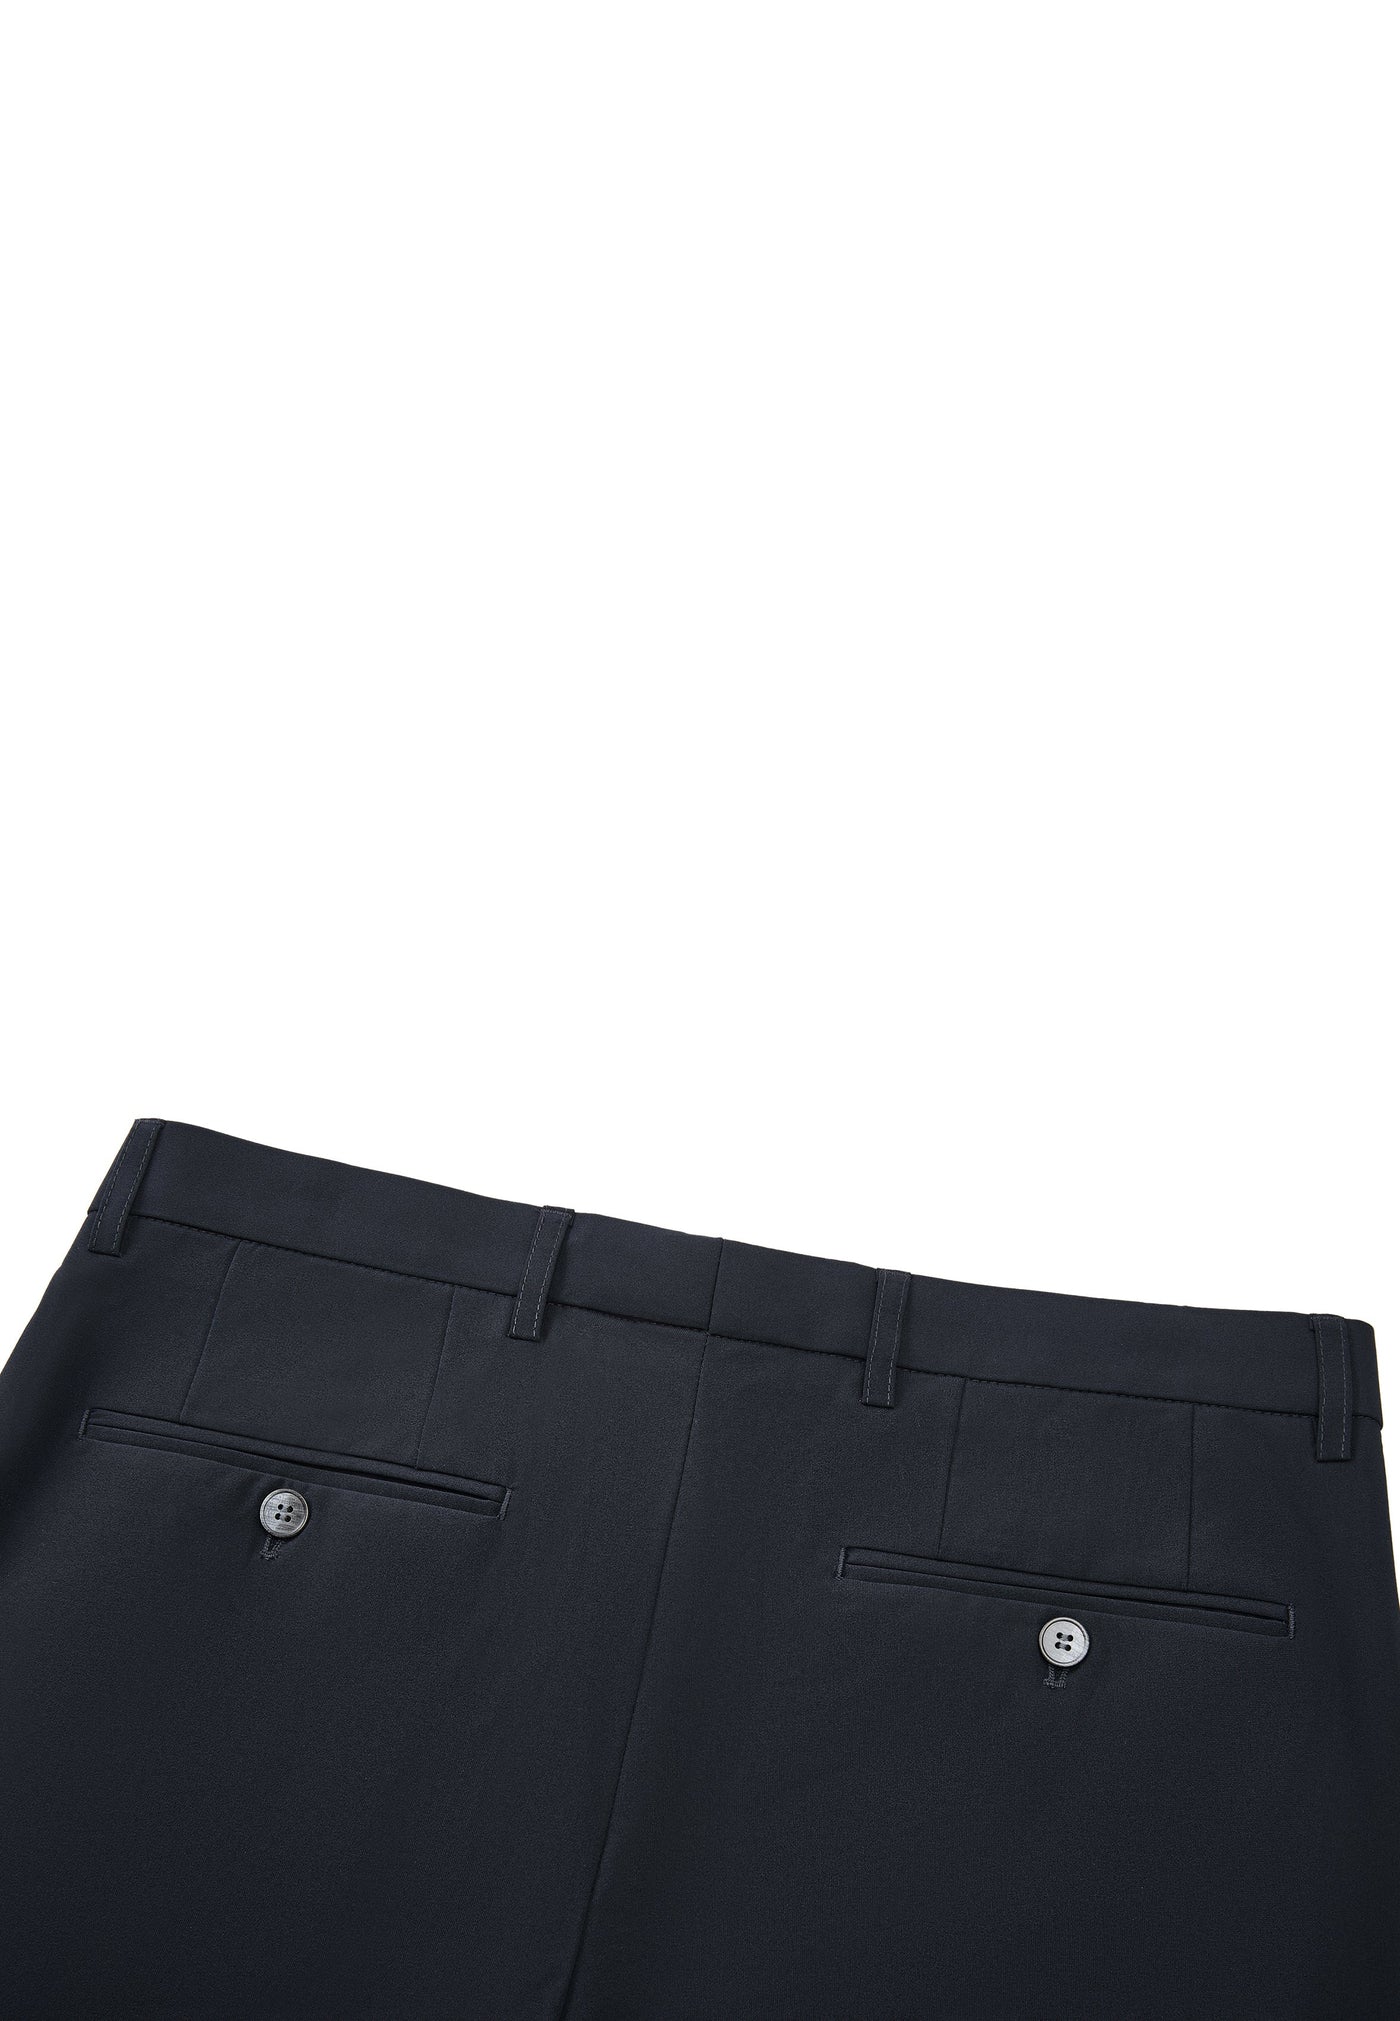 Men Clothing 3M Compact Multi-Way Stretch Suit Pants Smart Fit